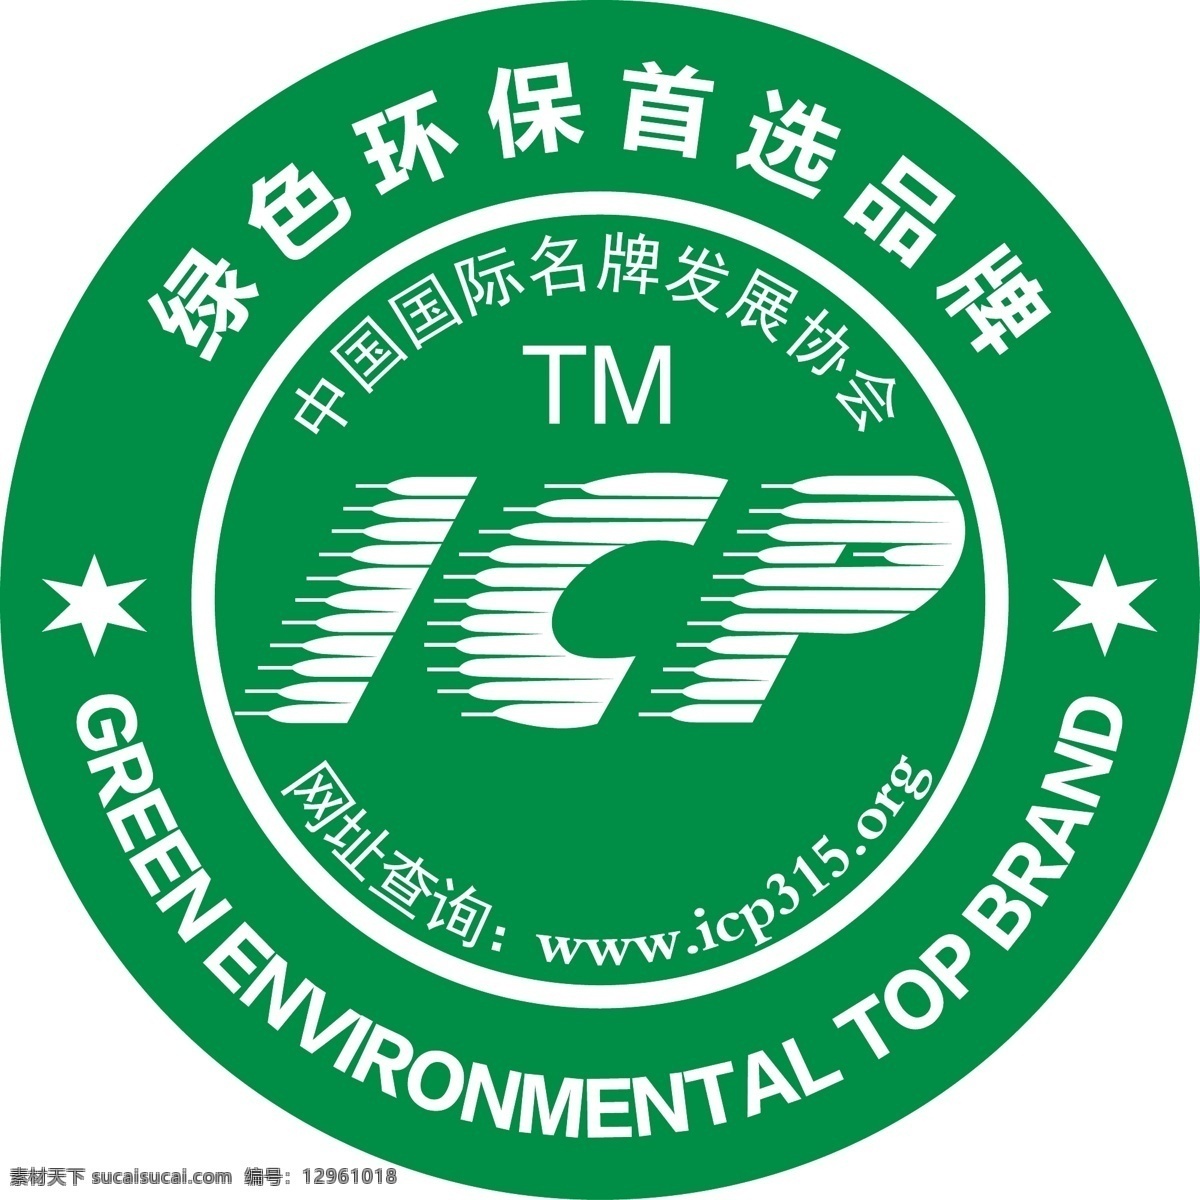 绿色环保 首选 品牌 绿色 环保 首选品牌 icp标志 中国国际品牌 其他设计 矢量